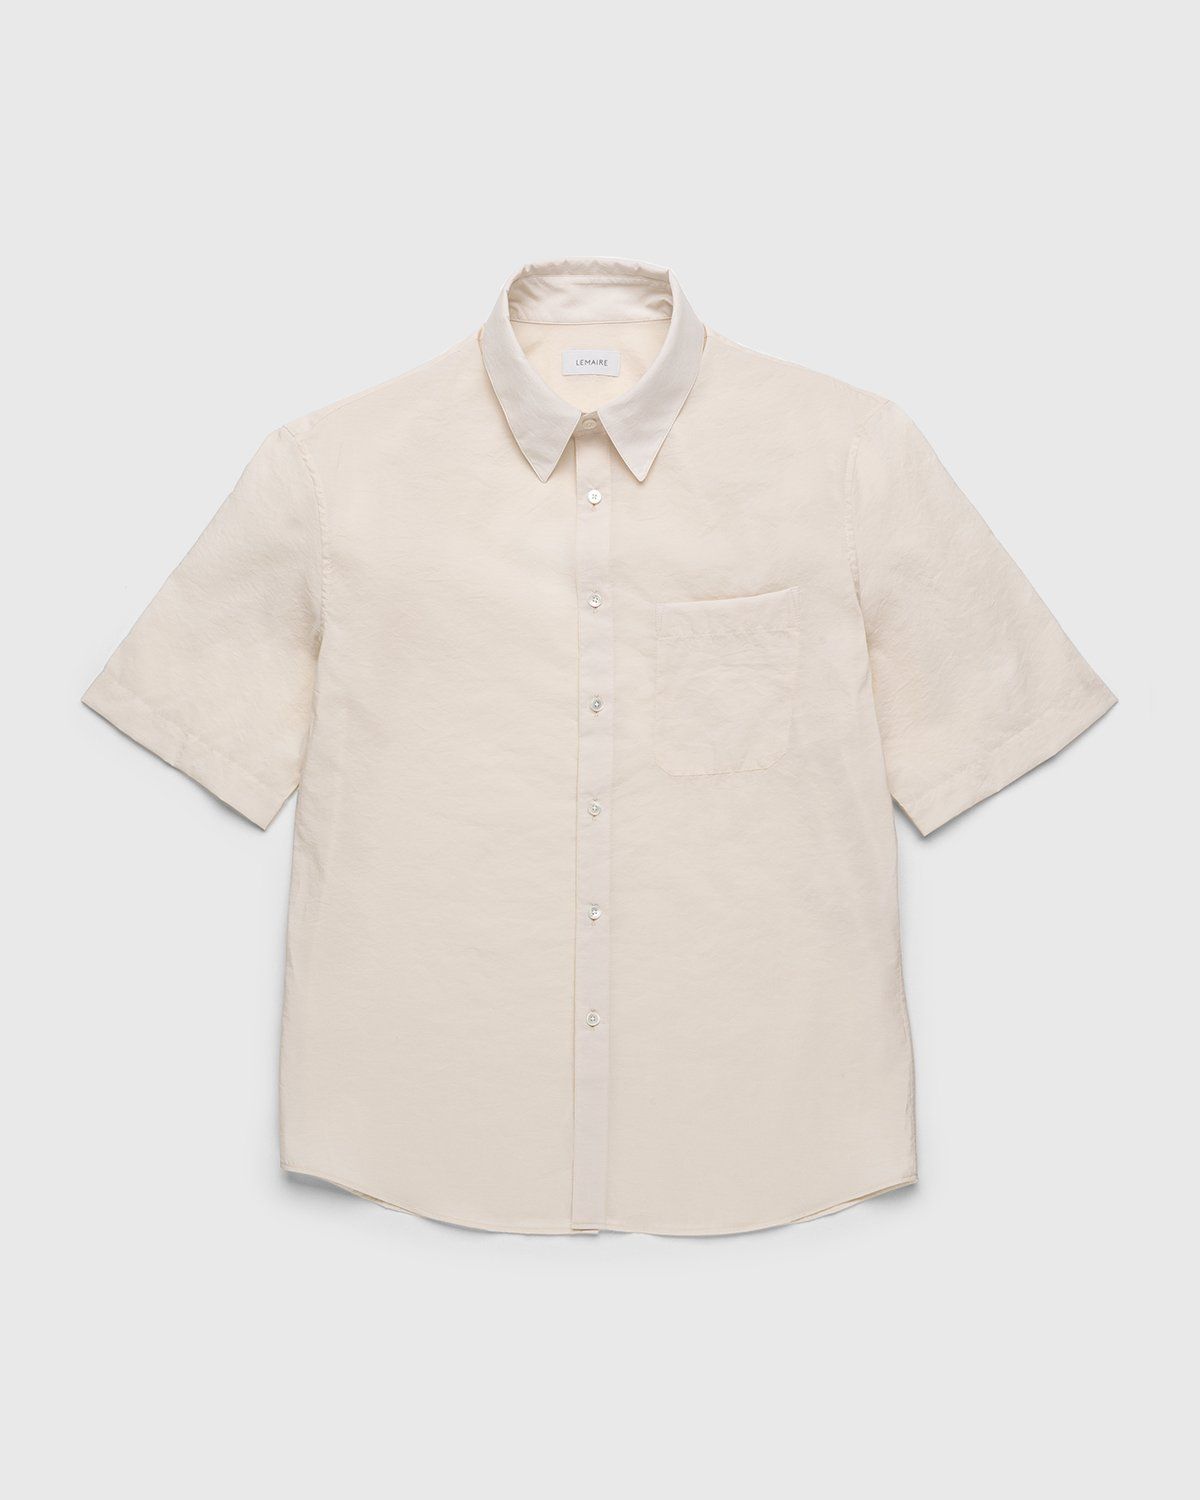 Lemaire – Regular Collar Short Sleeve Shirt Ivory - Shortsleeve Shirts - White - Image 1